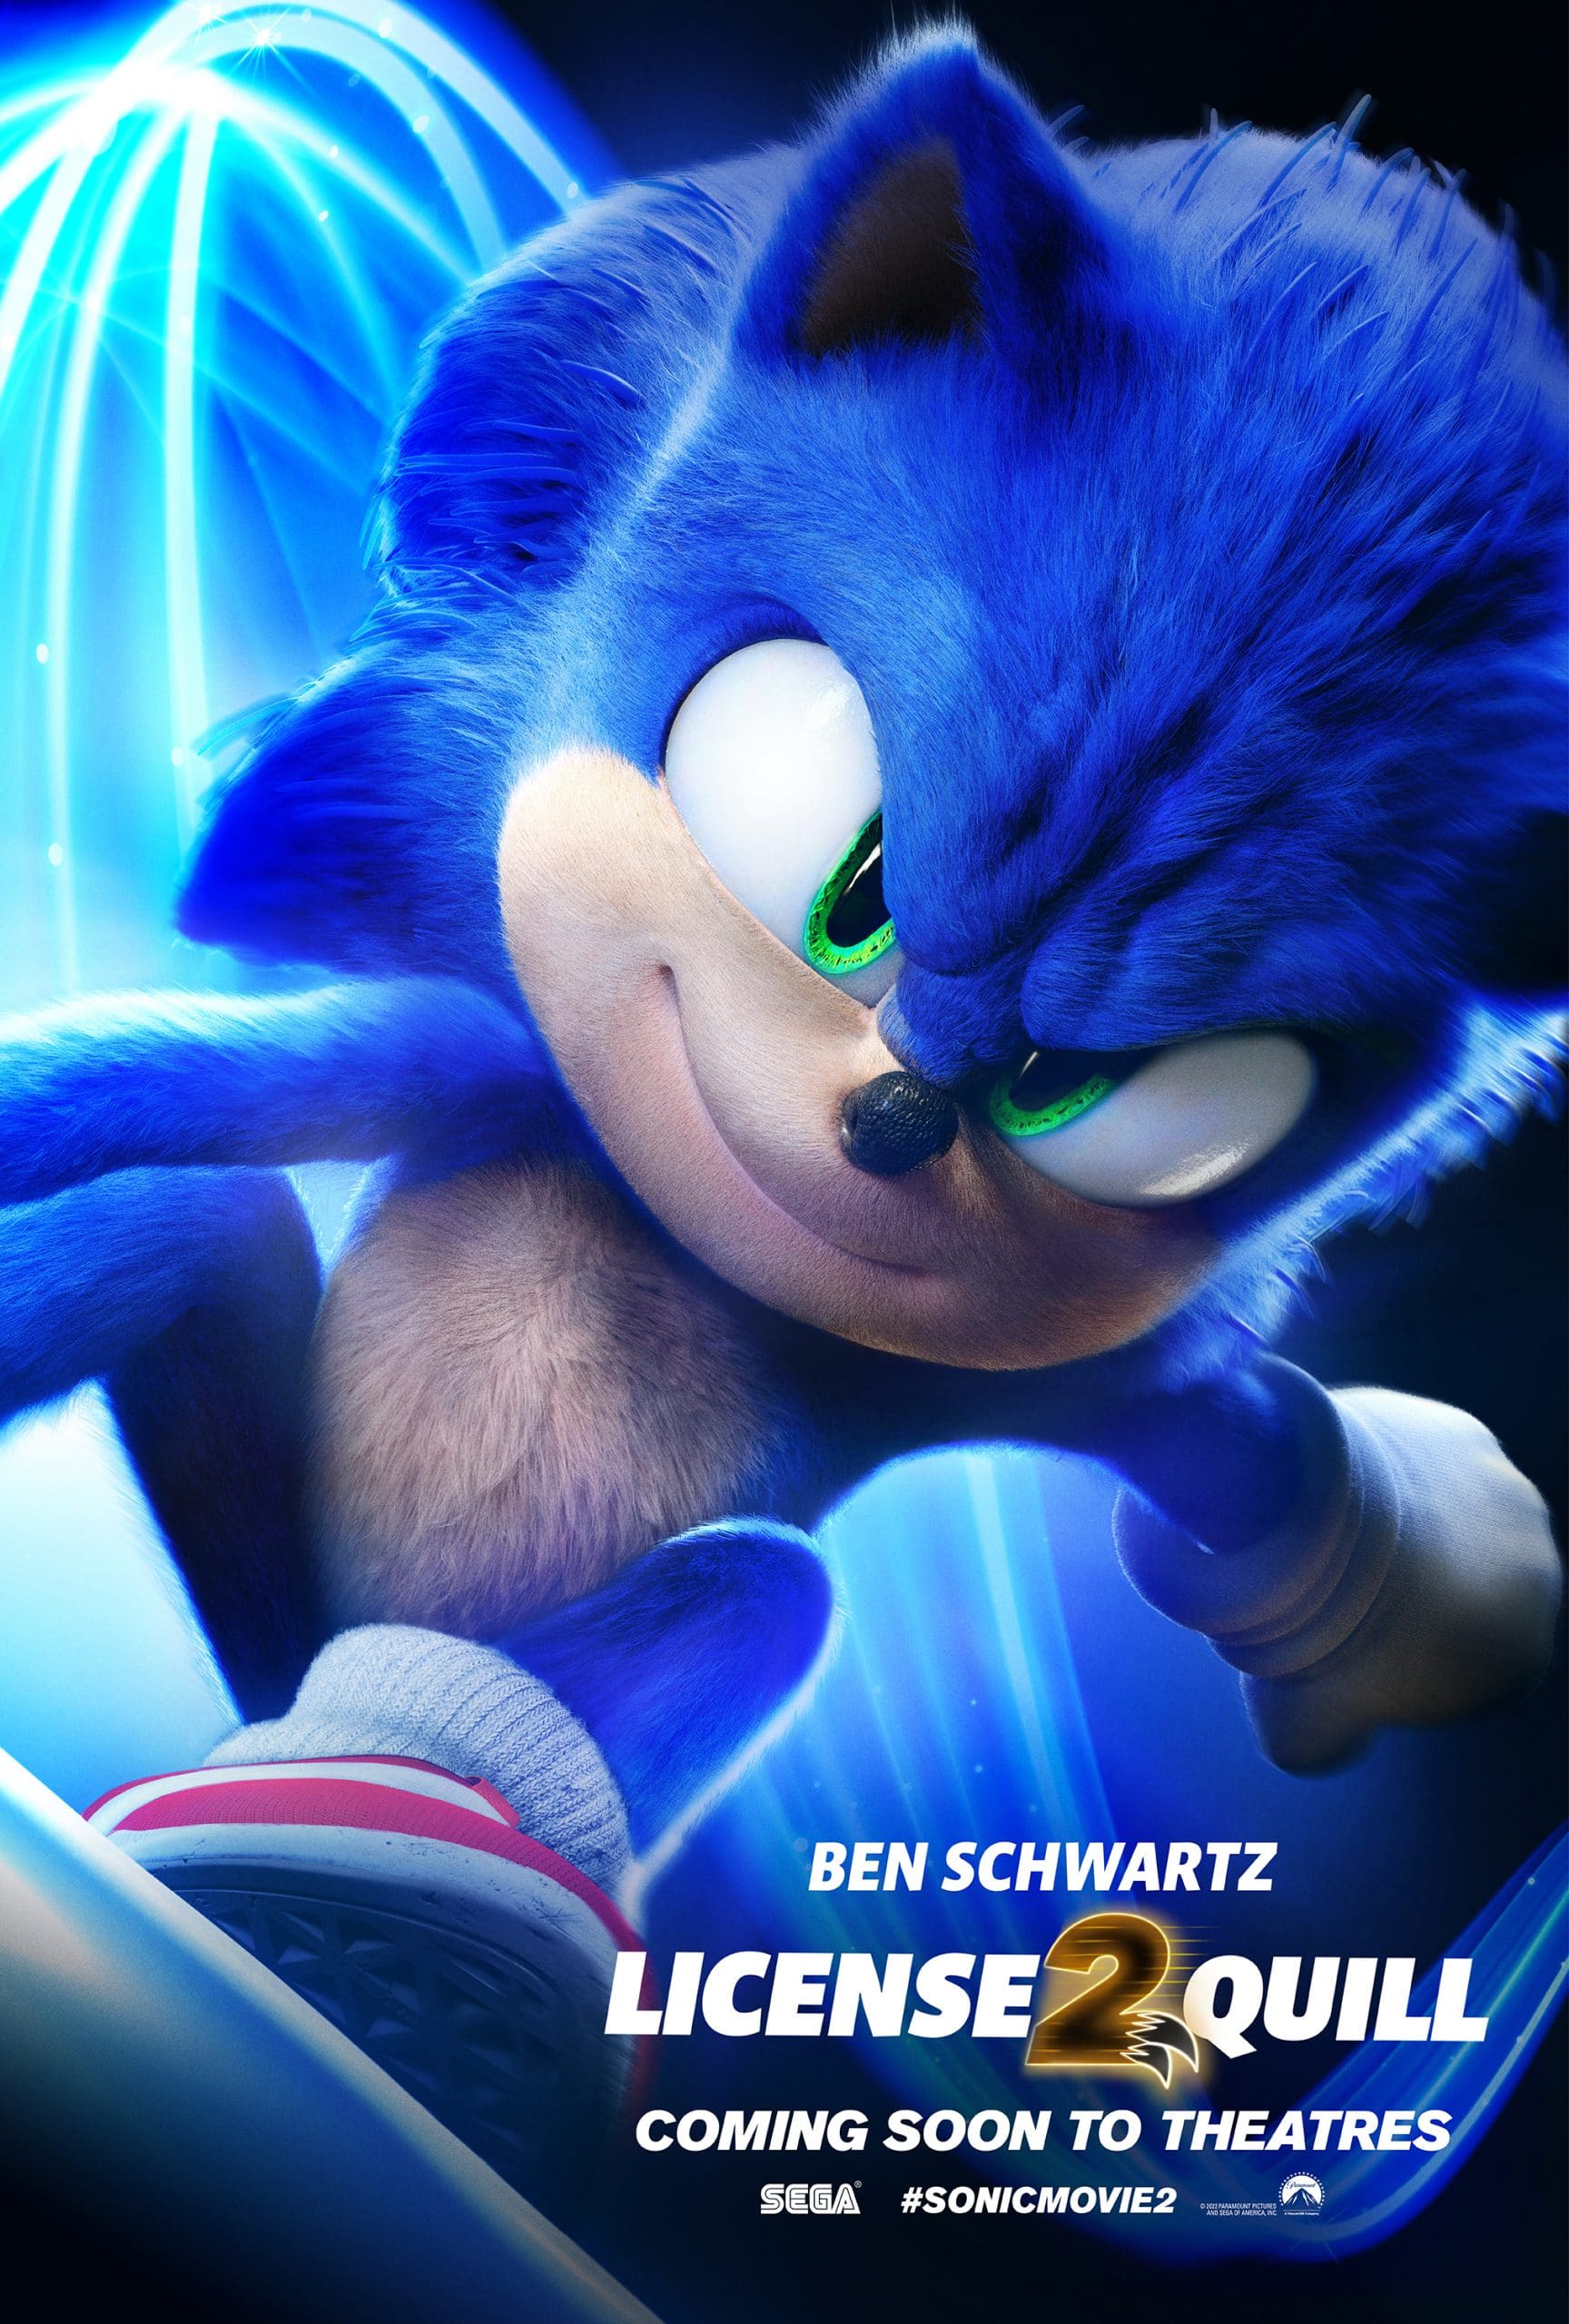 Update or Die! on X: Sonic 2: os novos cartazes Sonic 2 – O Filme, chega 7  de abril nos cinemas  ☻ Updater: Maria da Silva ☆  Categoria: Cinema  /